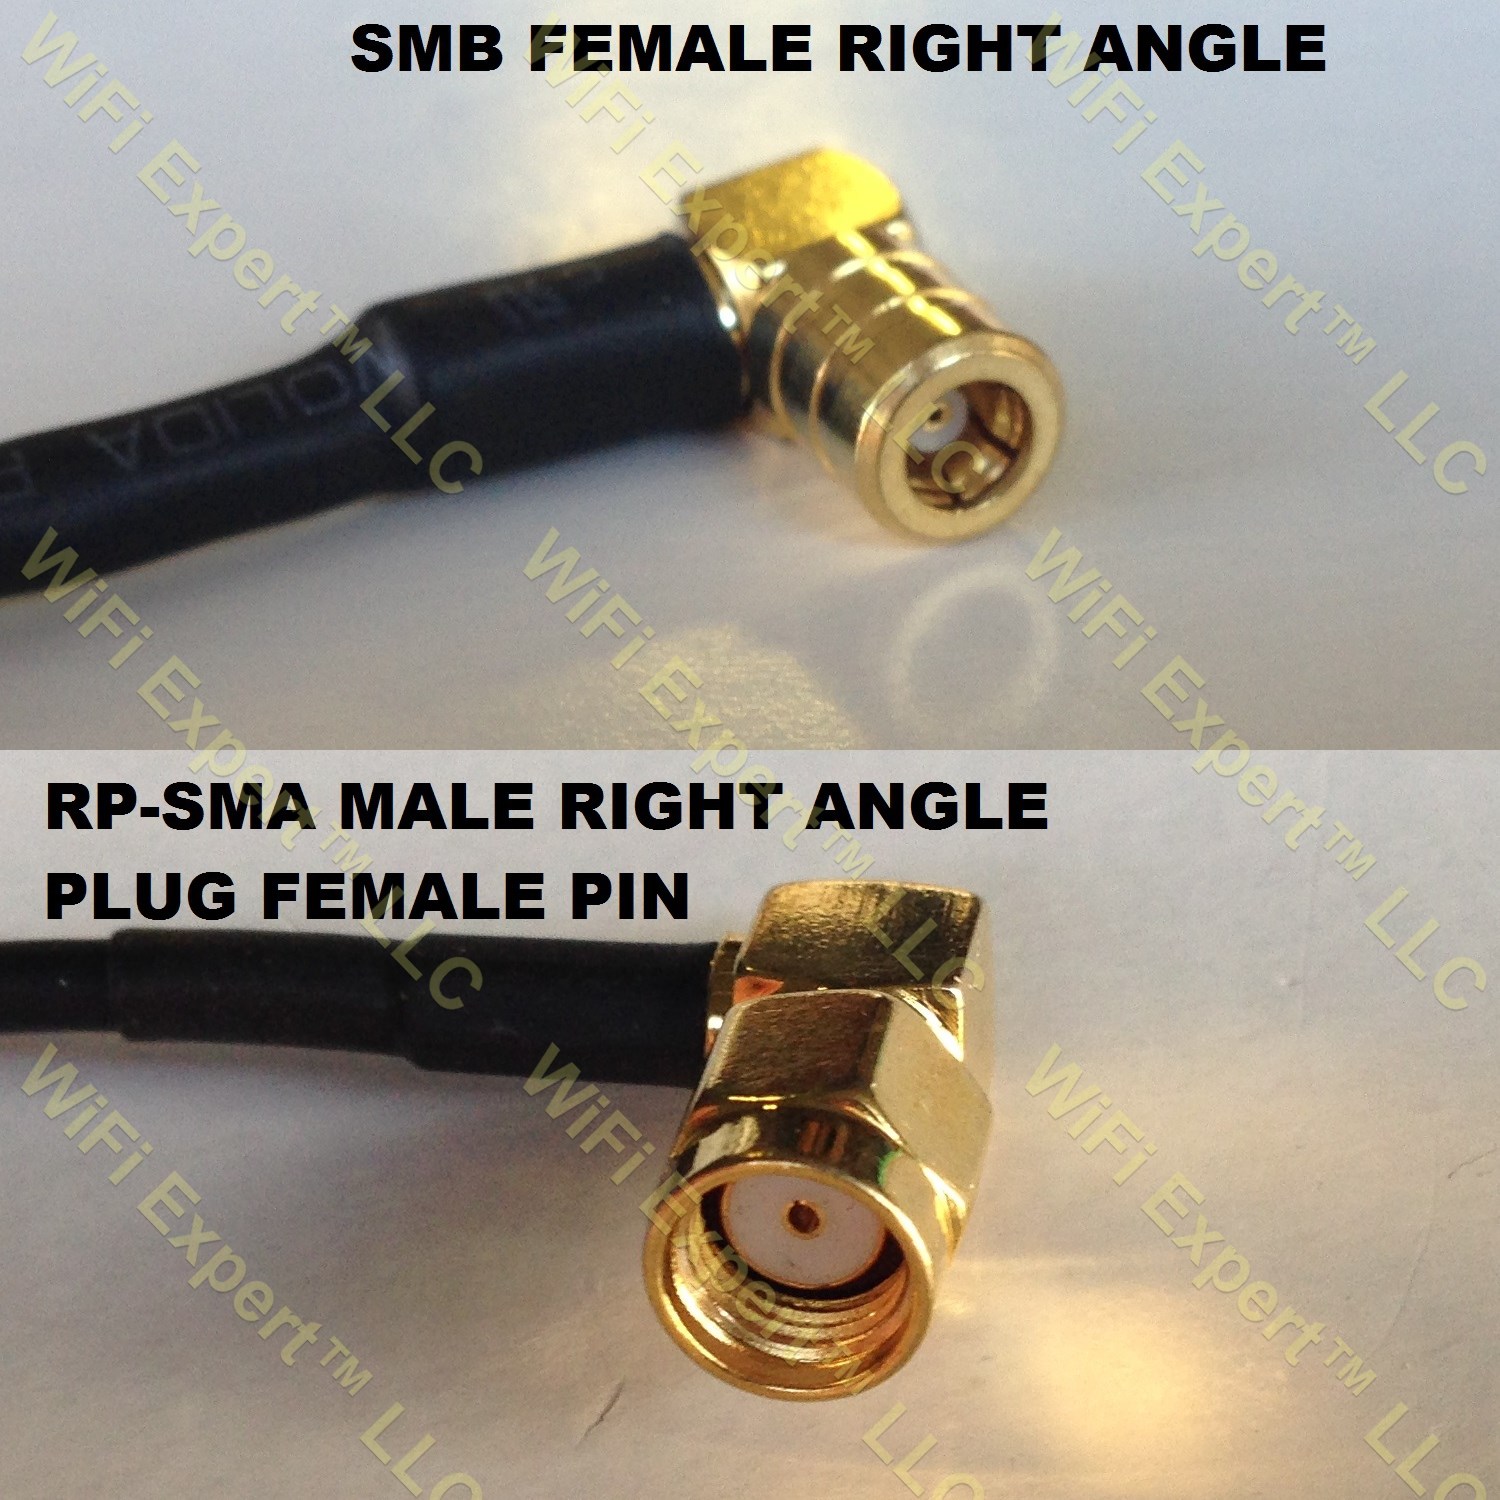 RG316 RP-SMA FEMALE ANGLE to DVB Pal Male Angle Coaxial RF Cable USA-US 